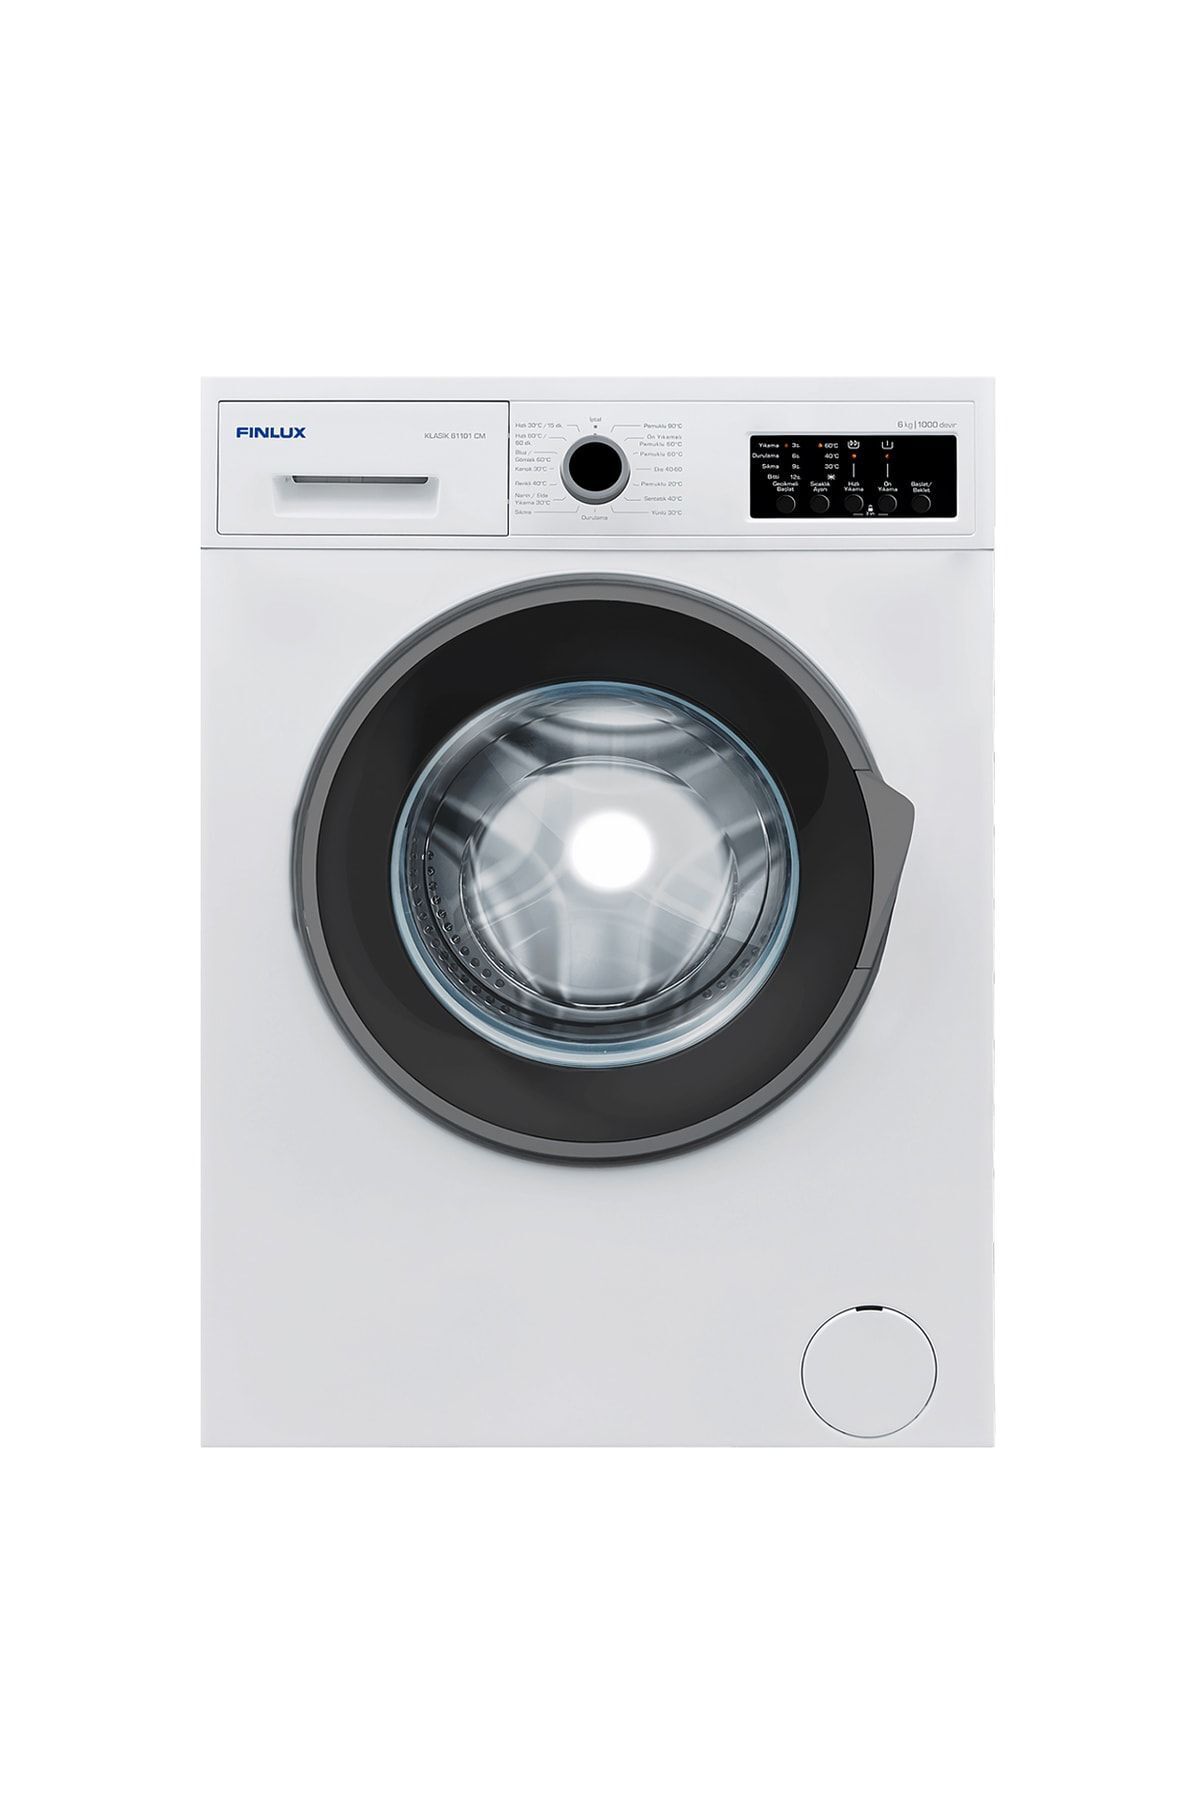 Finlux Klasik 61101 Cm D Enerji Sınıfı 6 Kg 1000 Devir Çamaşır Makinesi